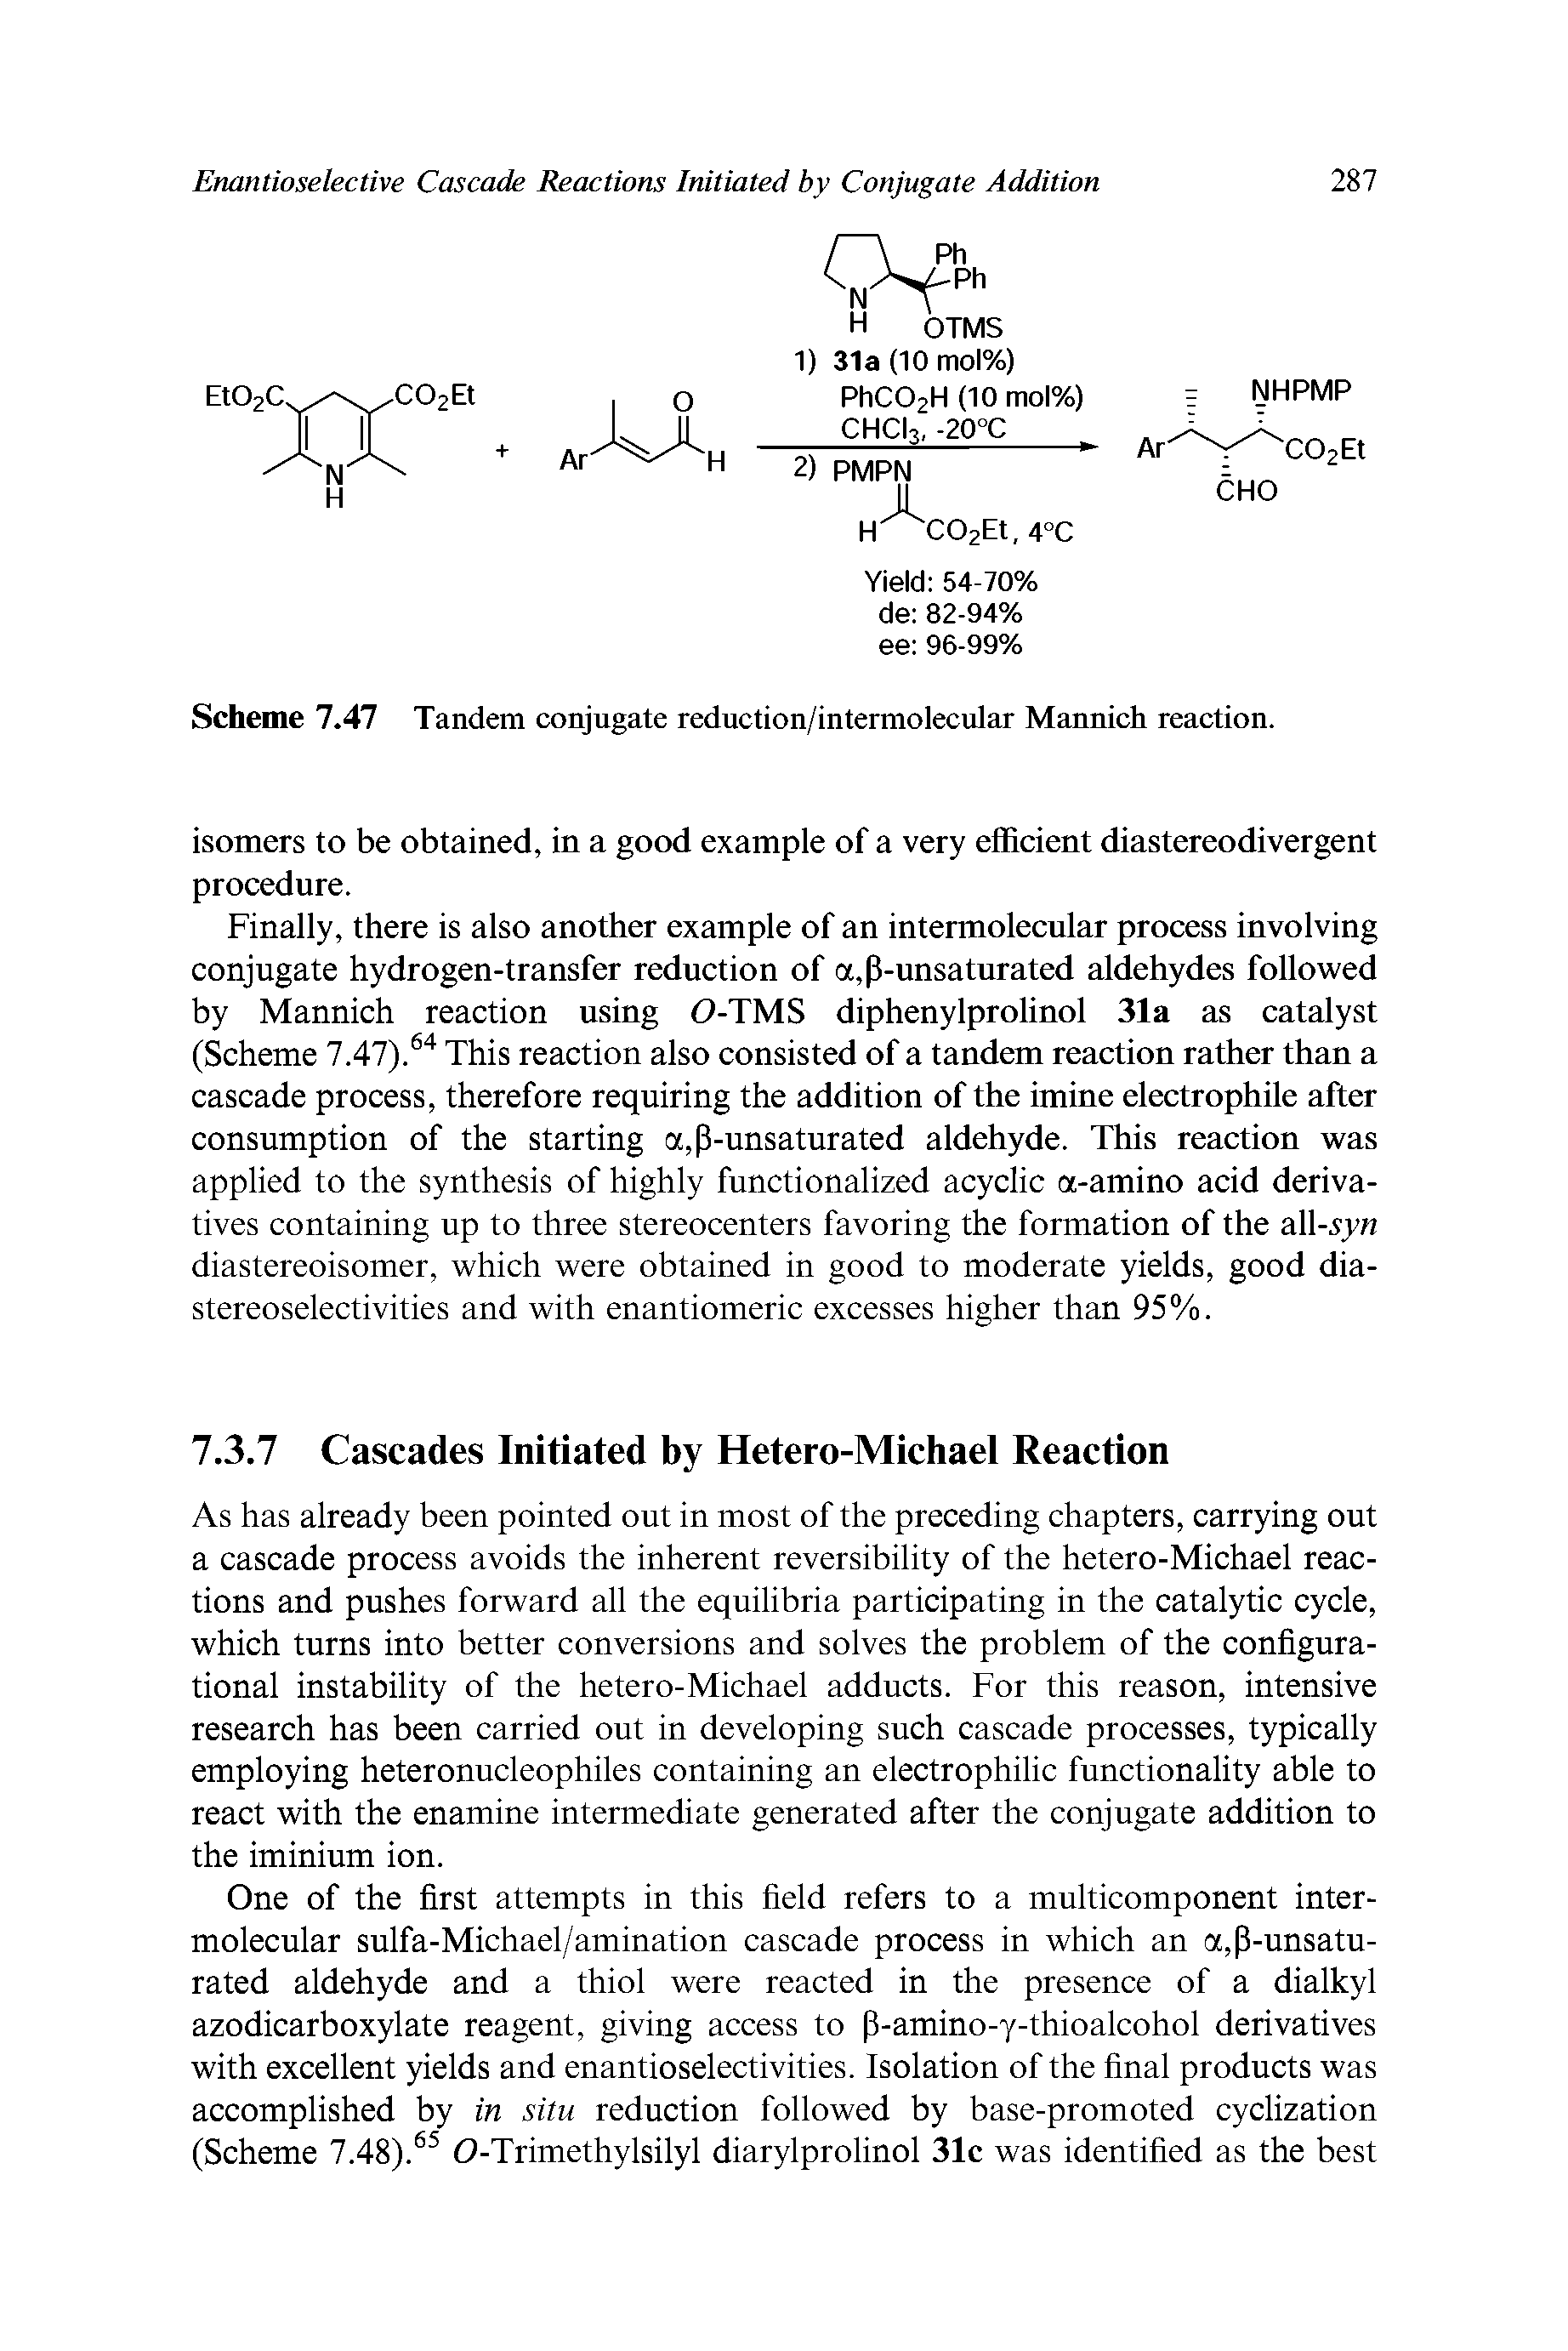 Scheme 7.47 Tandem conjugate reduction/intermolecular Mannich reaction.